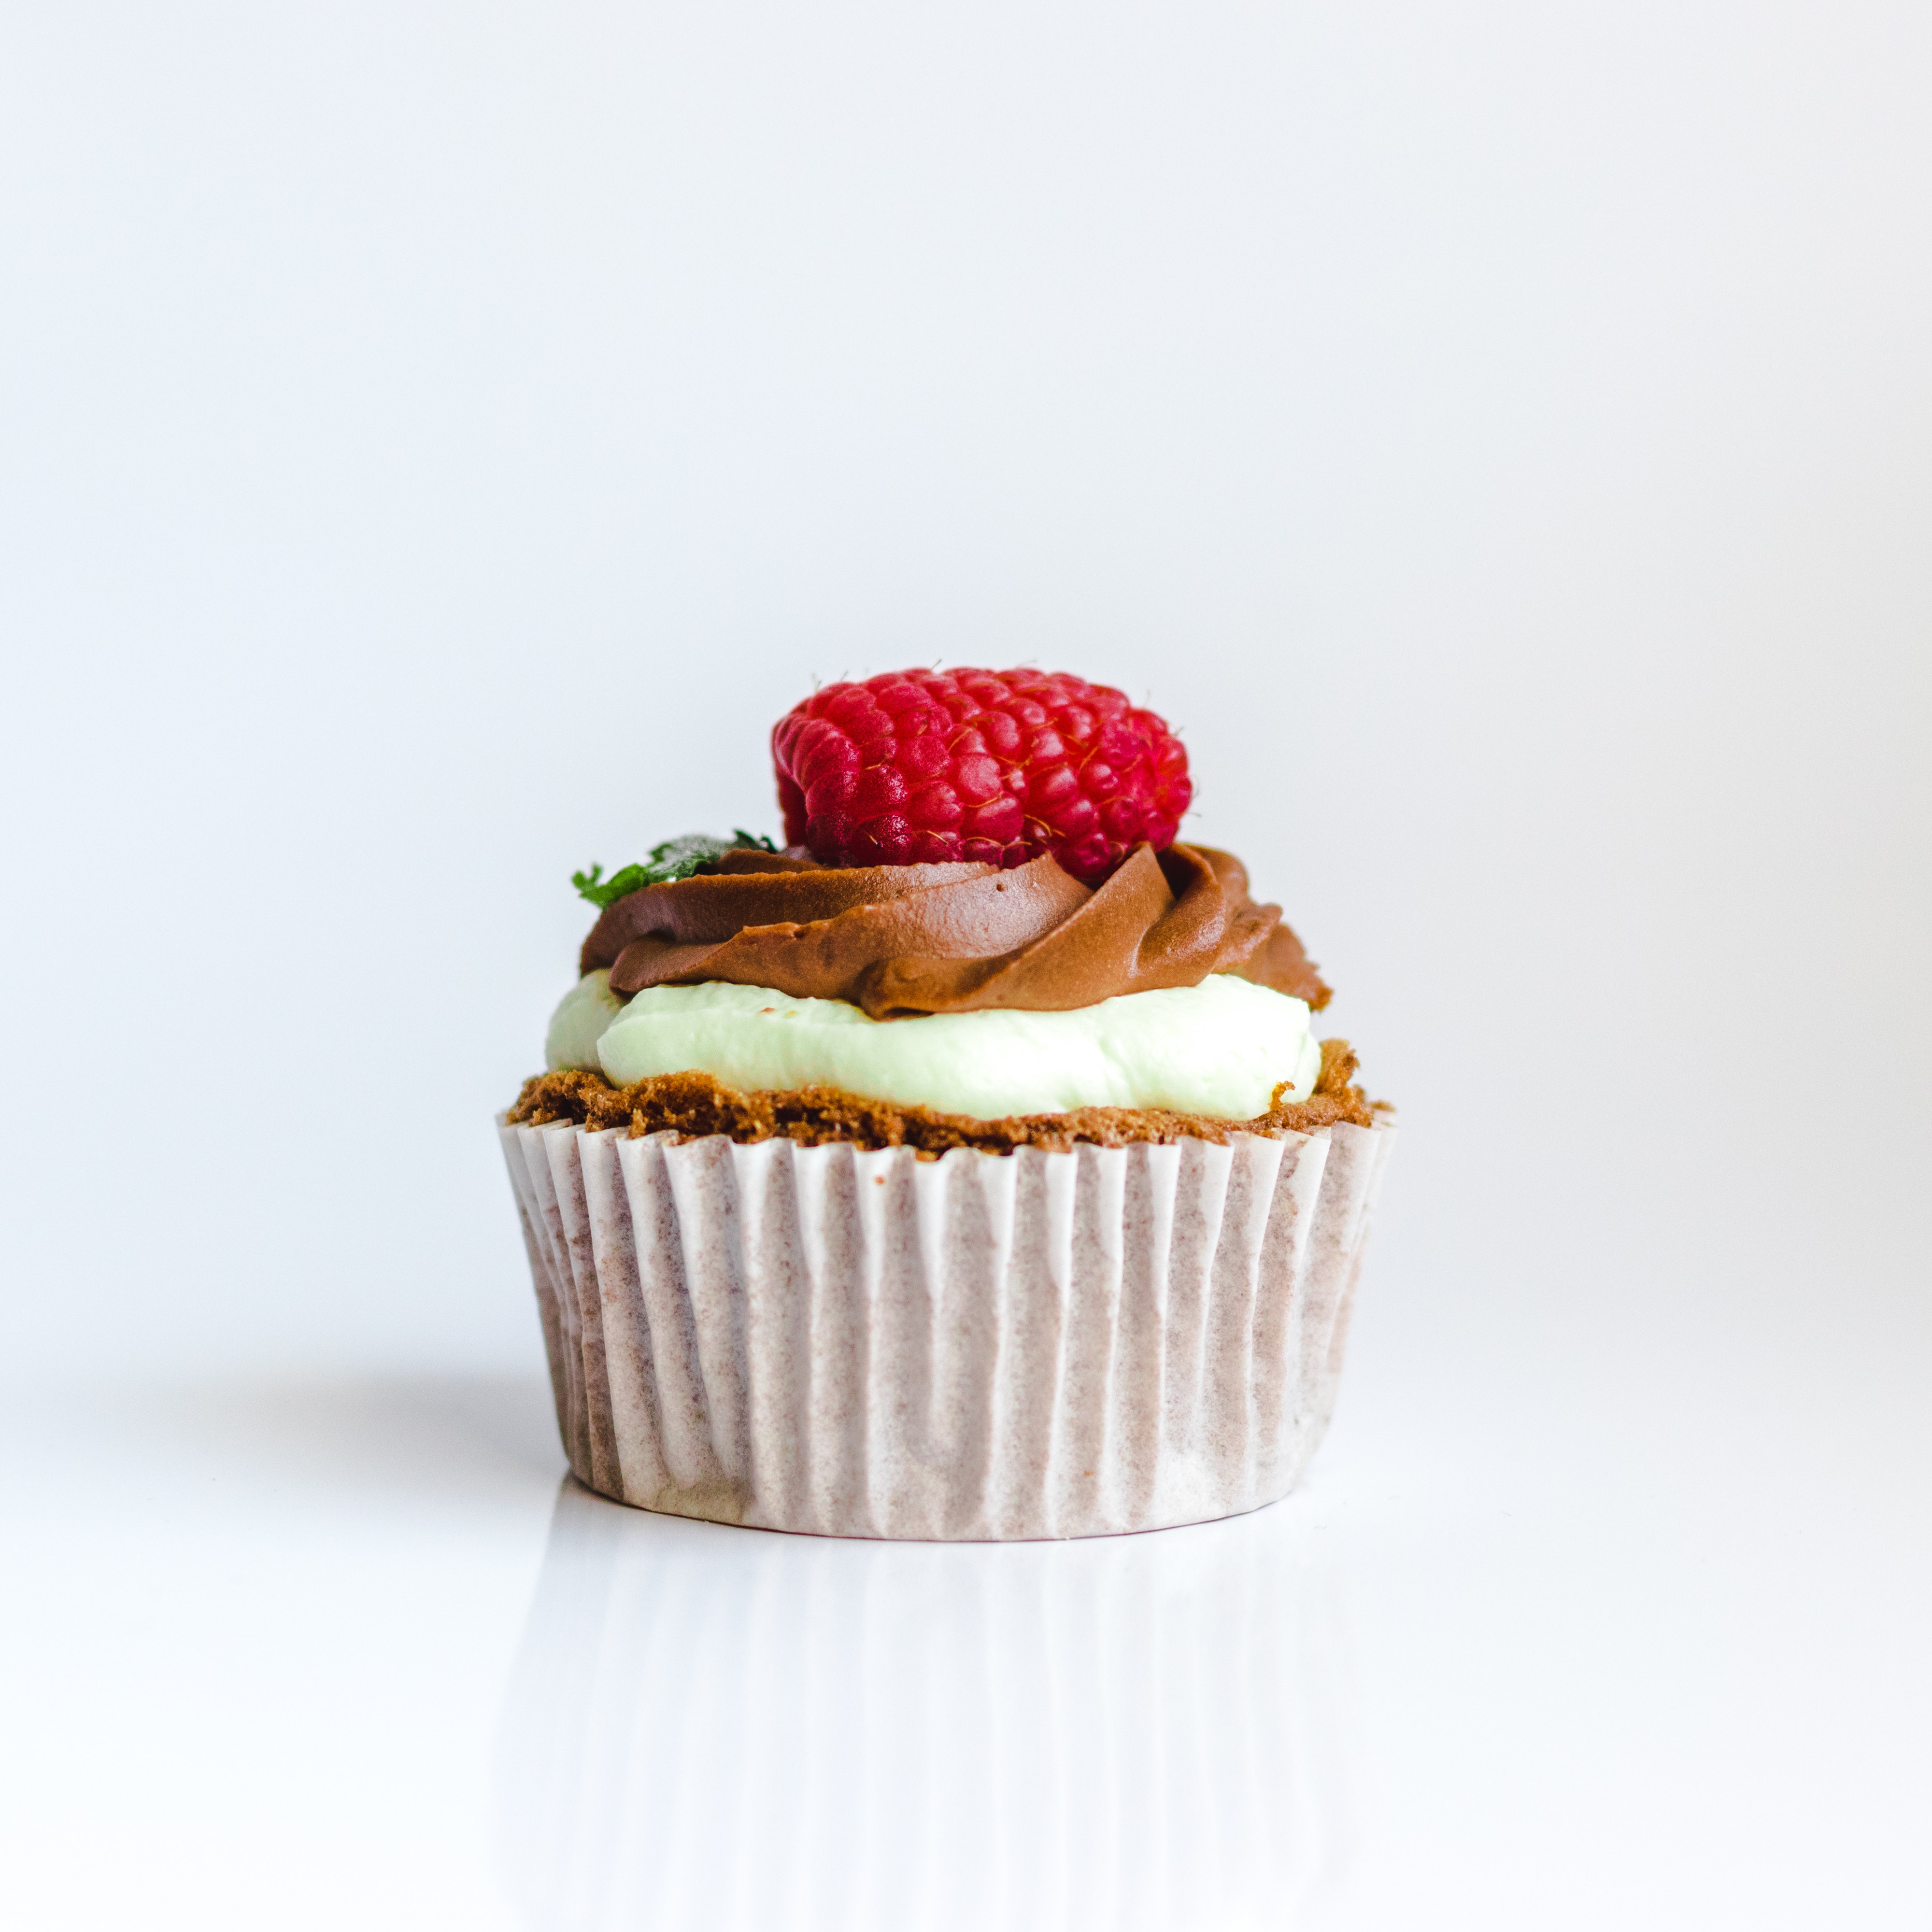 baked-berry-cake-1055272.jpg